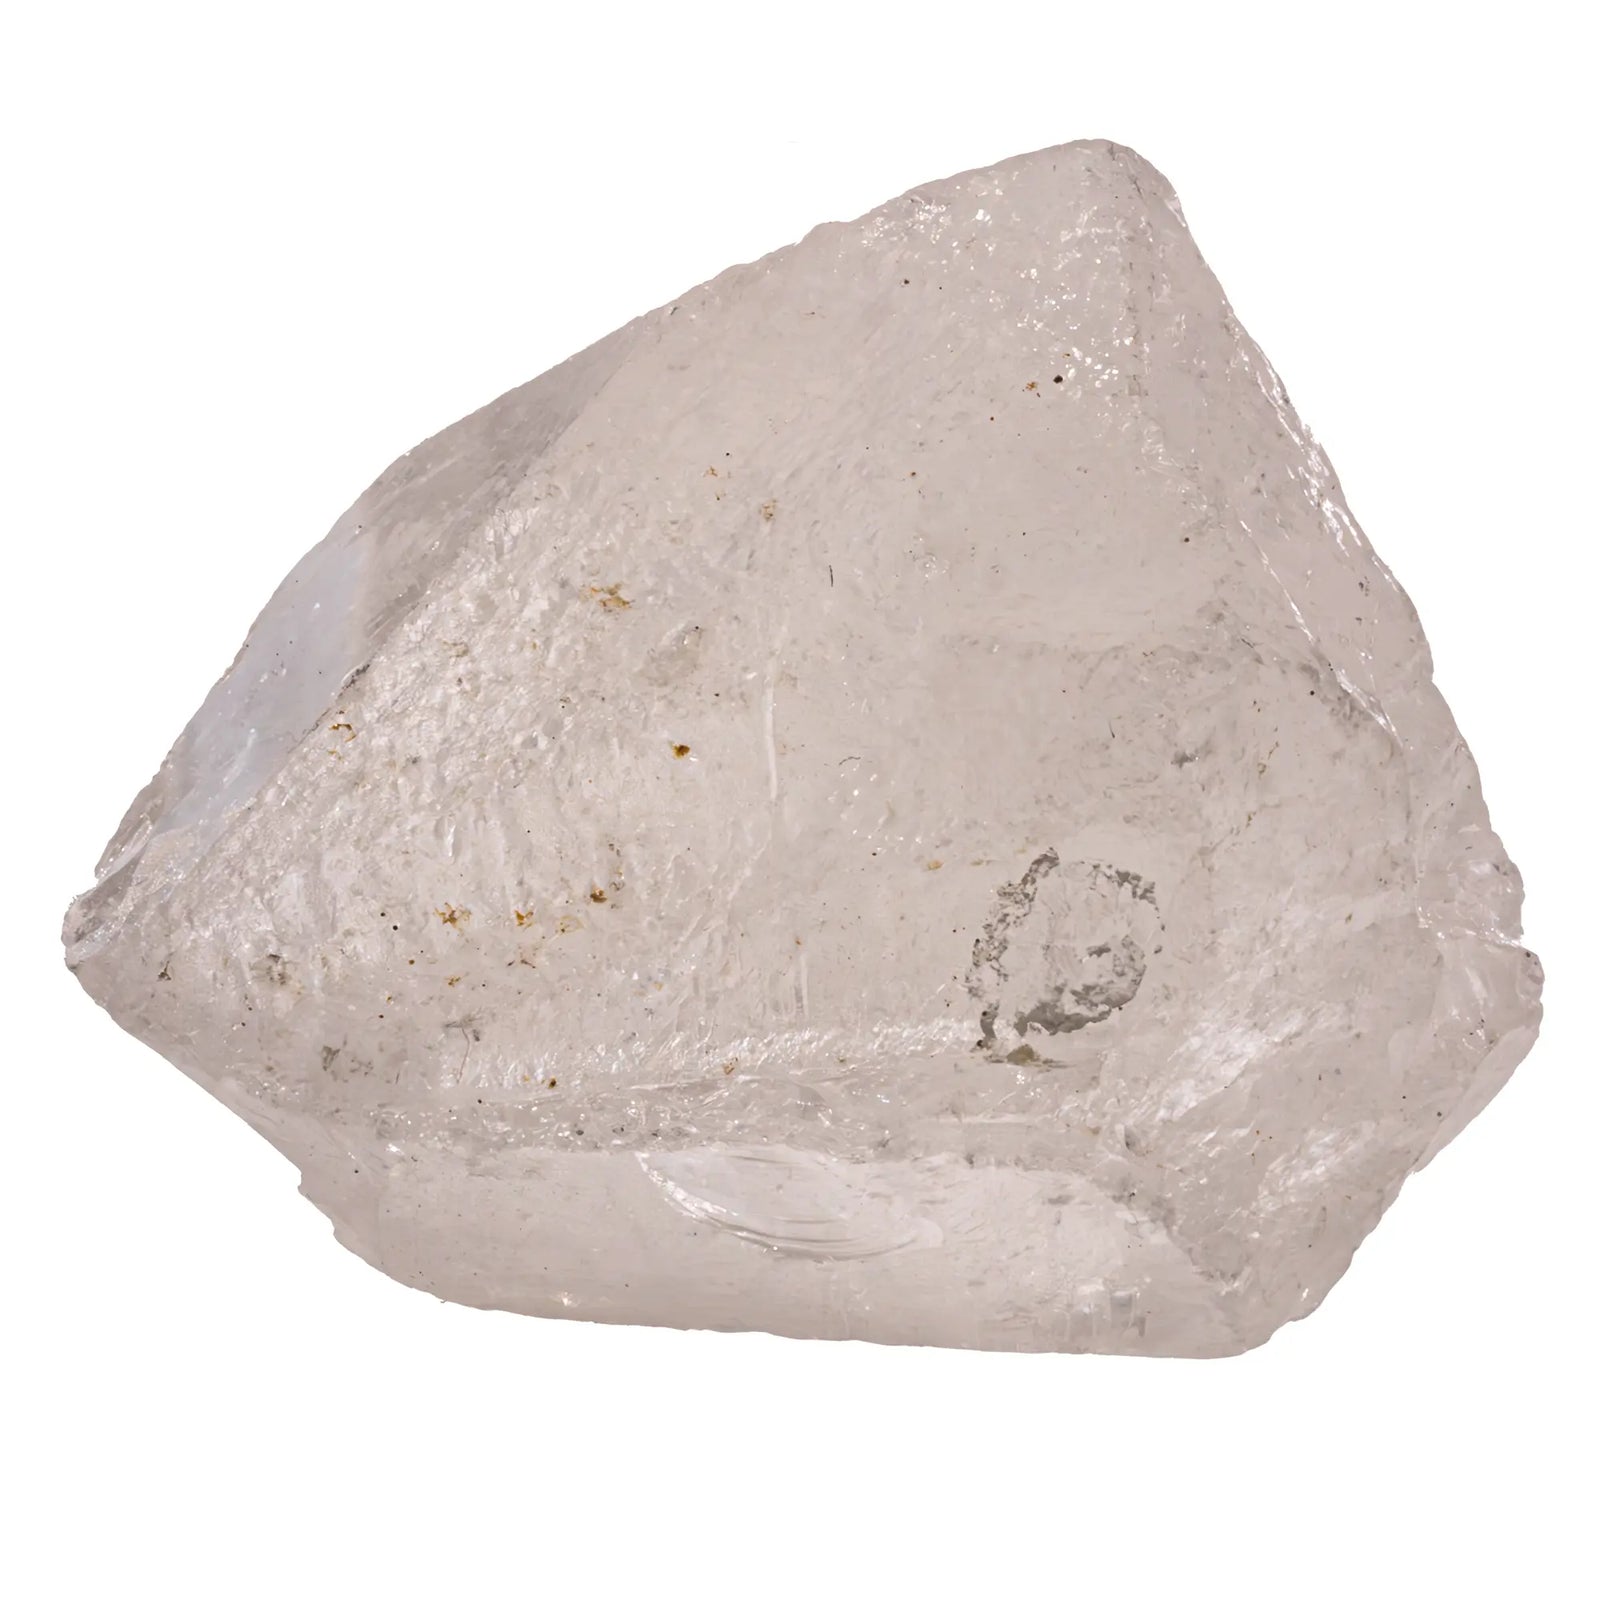 Cristal de roche - pierre brute  - CRISTAL SOURCES